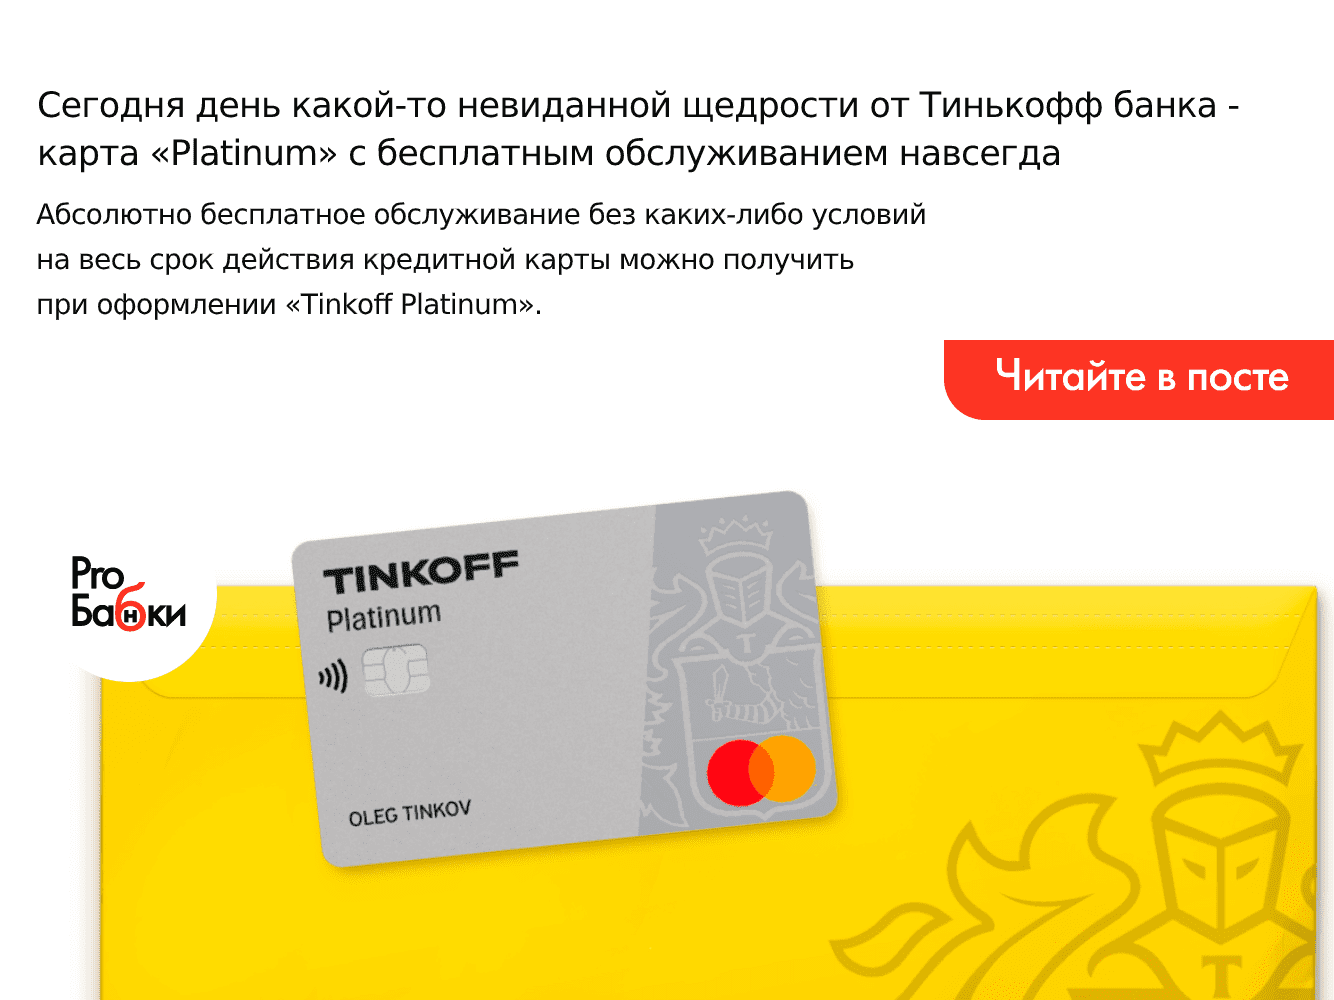 Кредитная карта банка тинькофф платинум